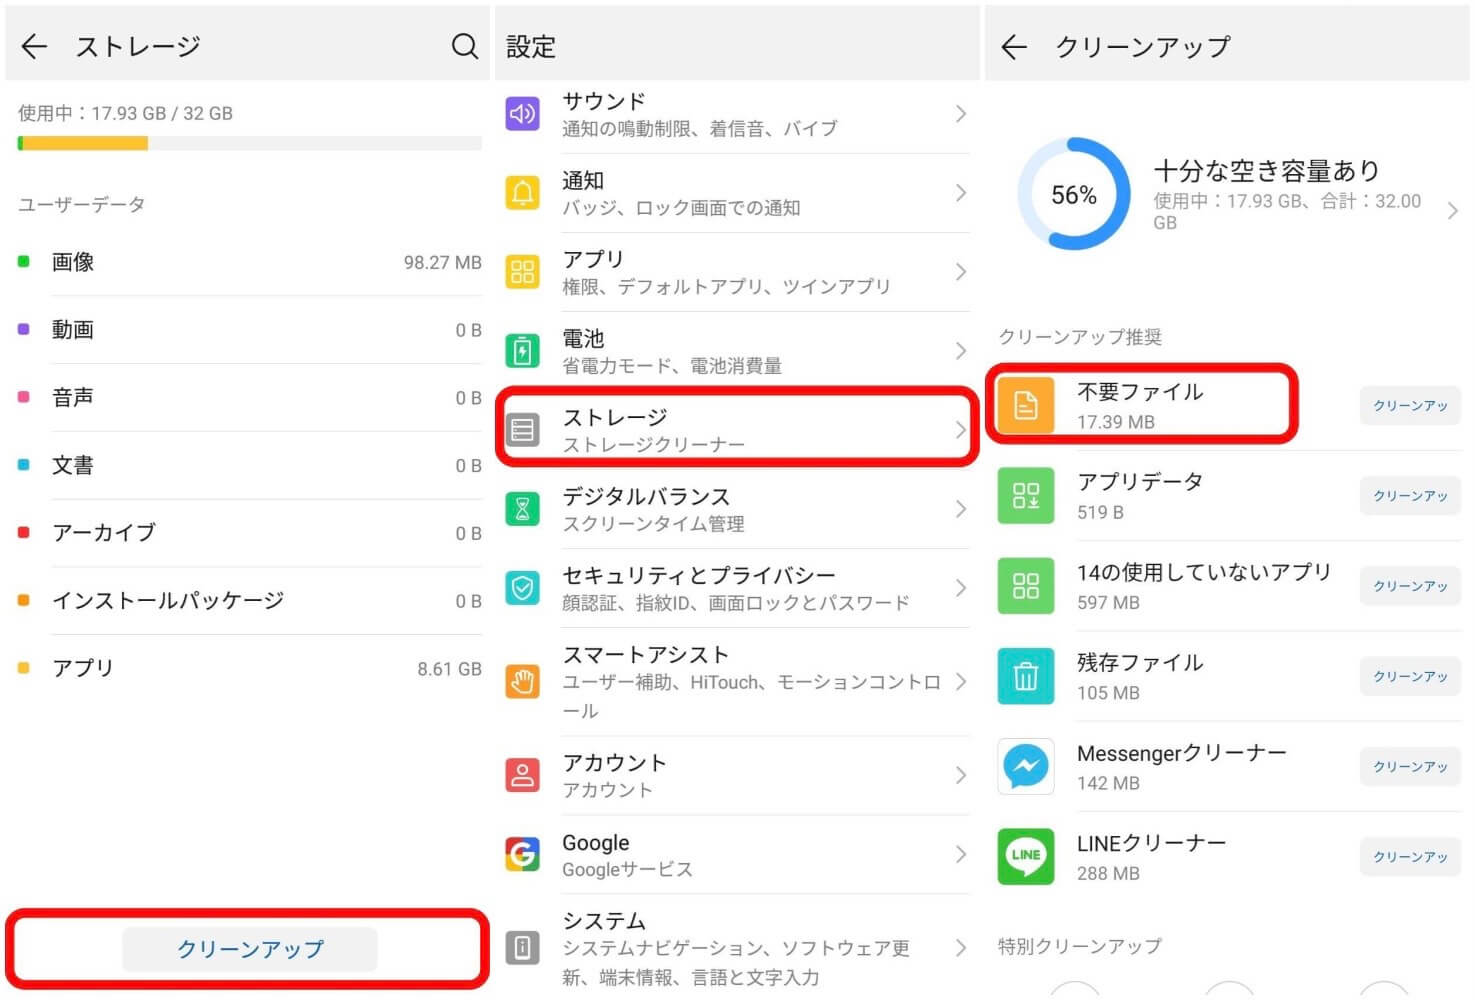 Android8.0以降の機種でキャッシュデータを削除　写真元：mag.app-liv.jp